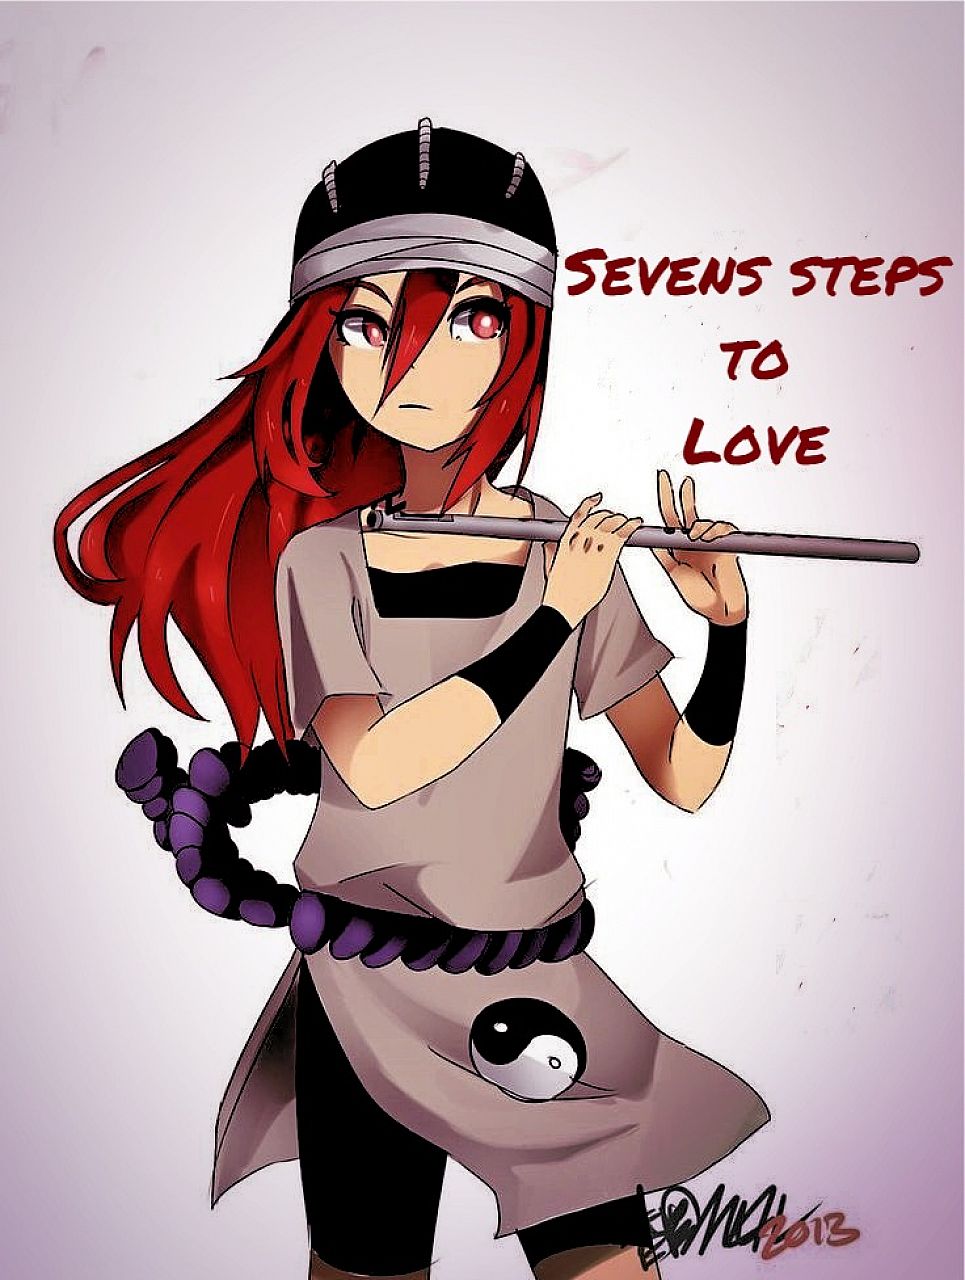 Sevens steps to Love